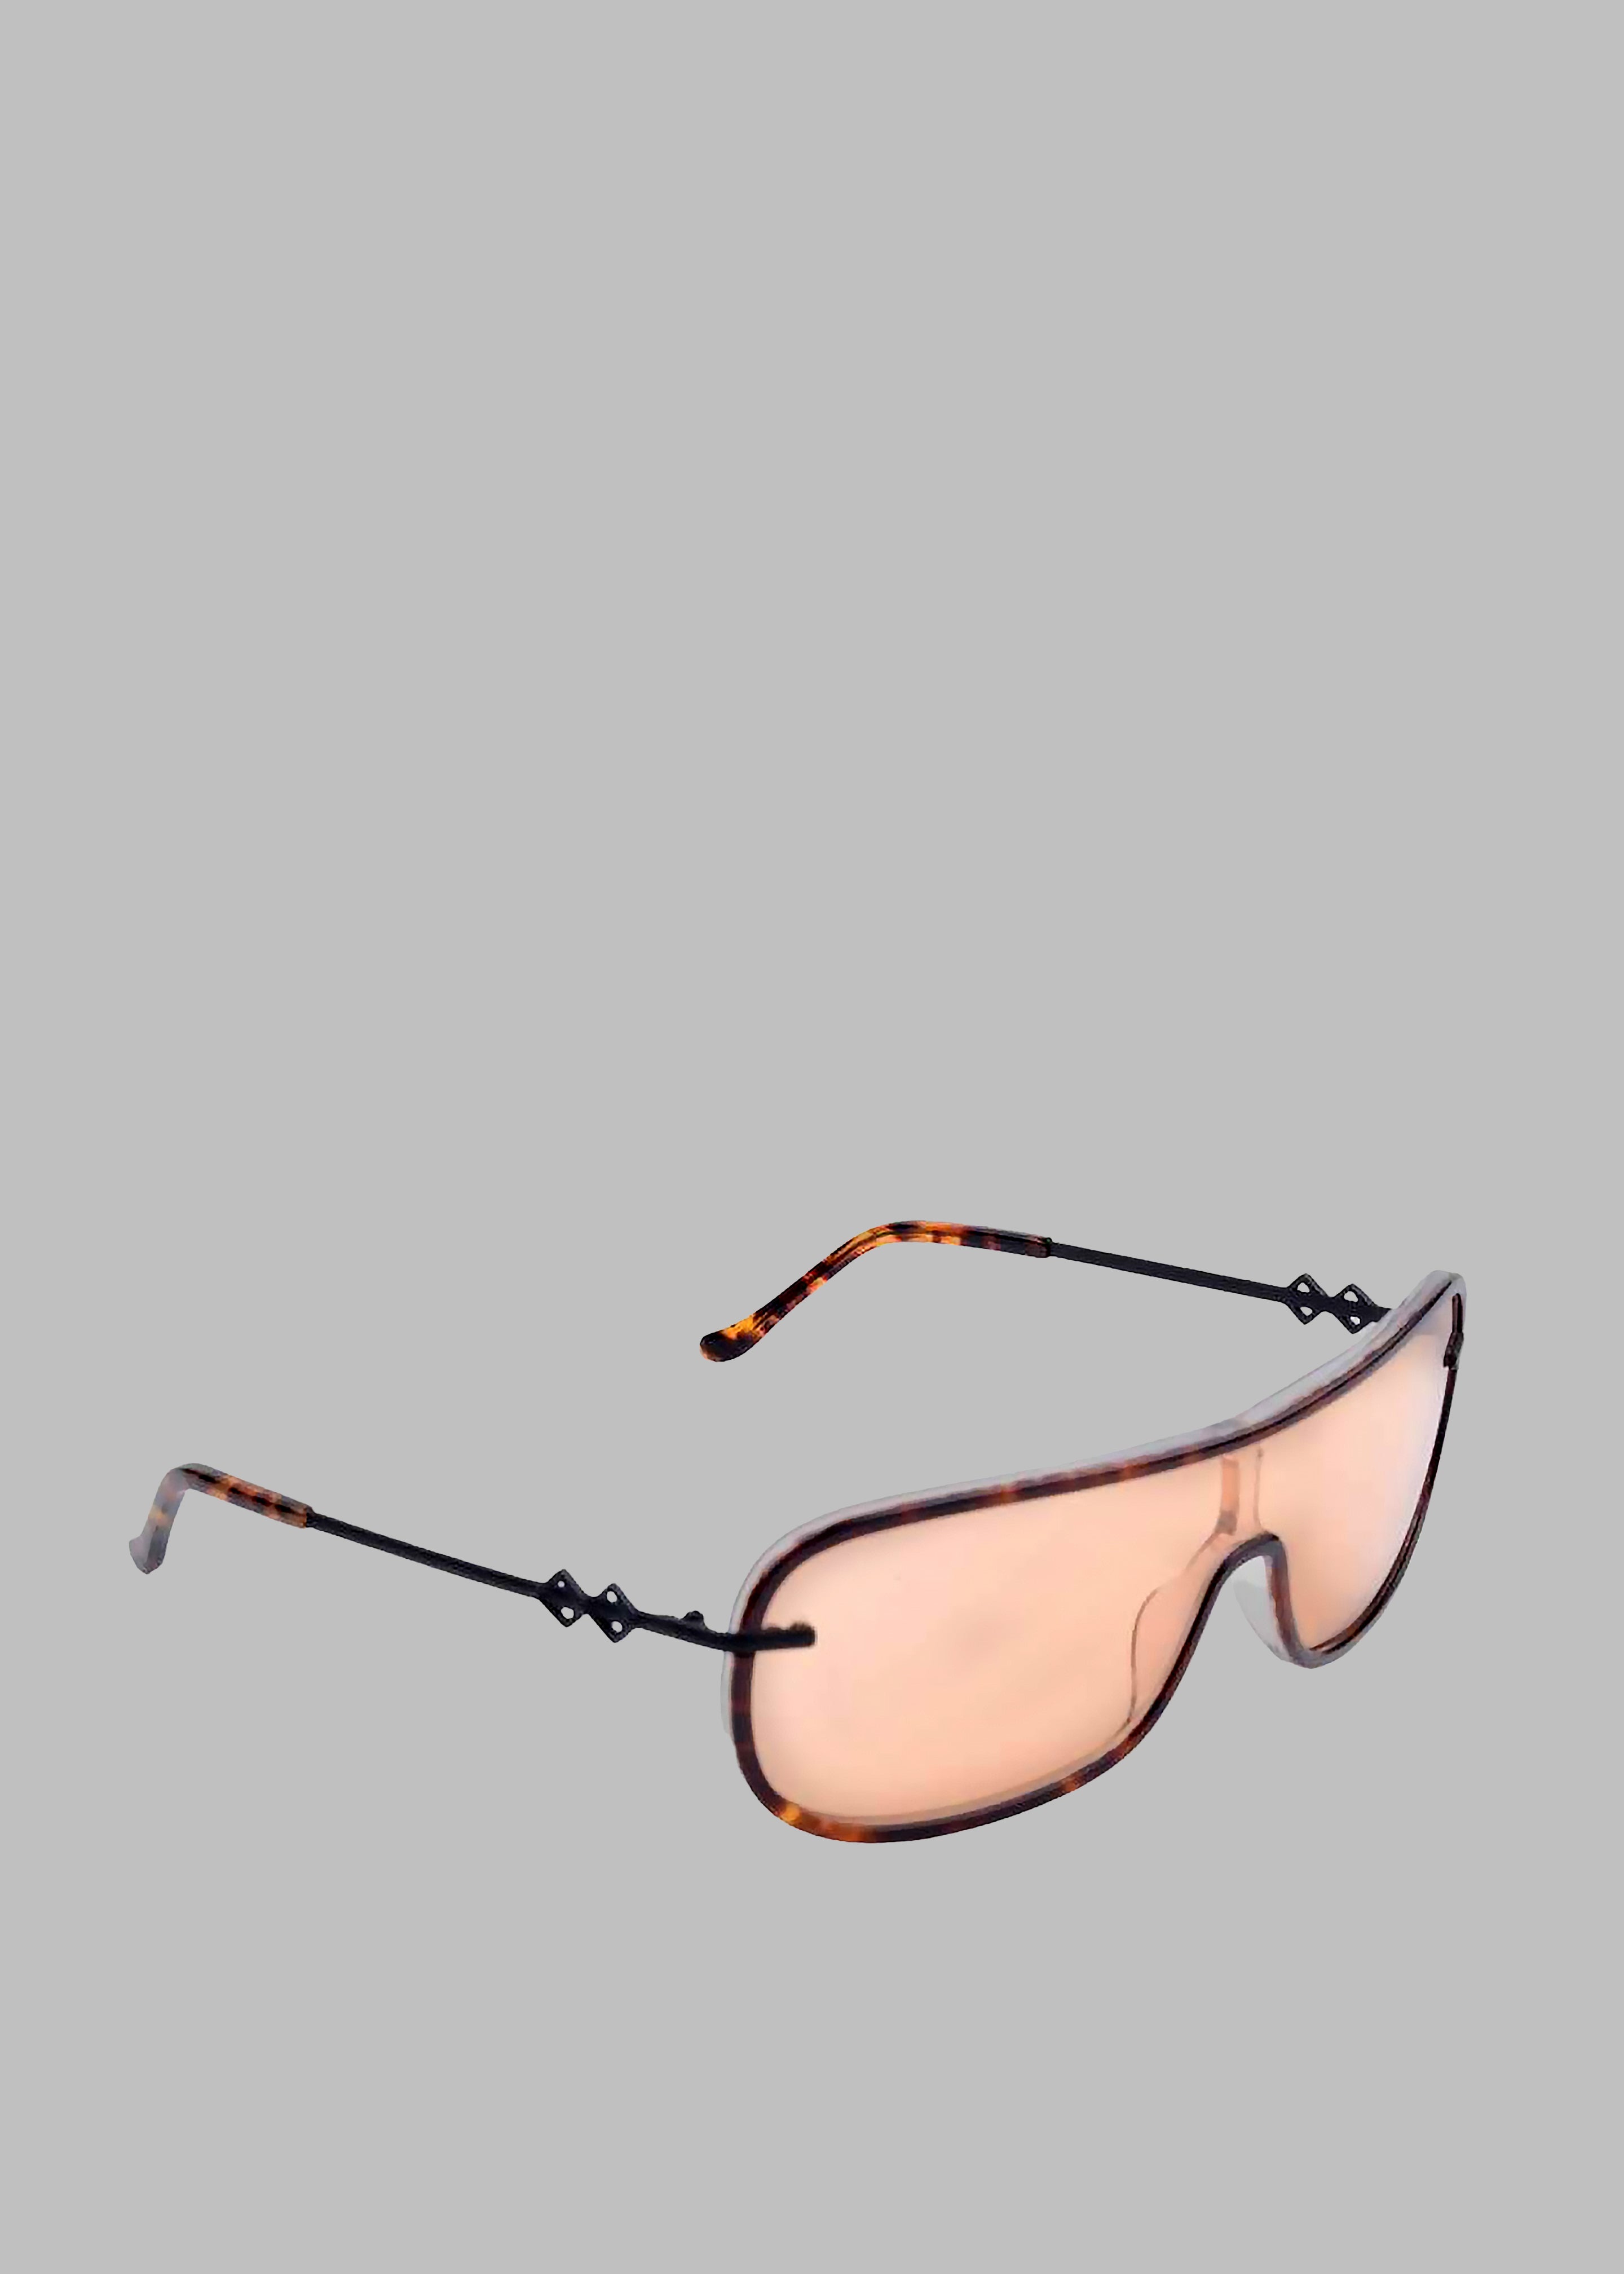 Karen Wazen Jordan Sunglasses - Peanut - 4